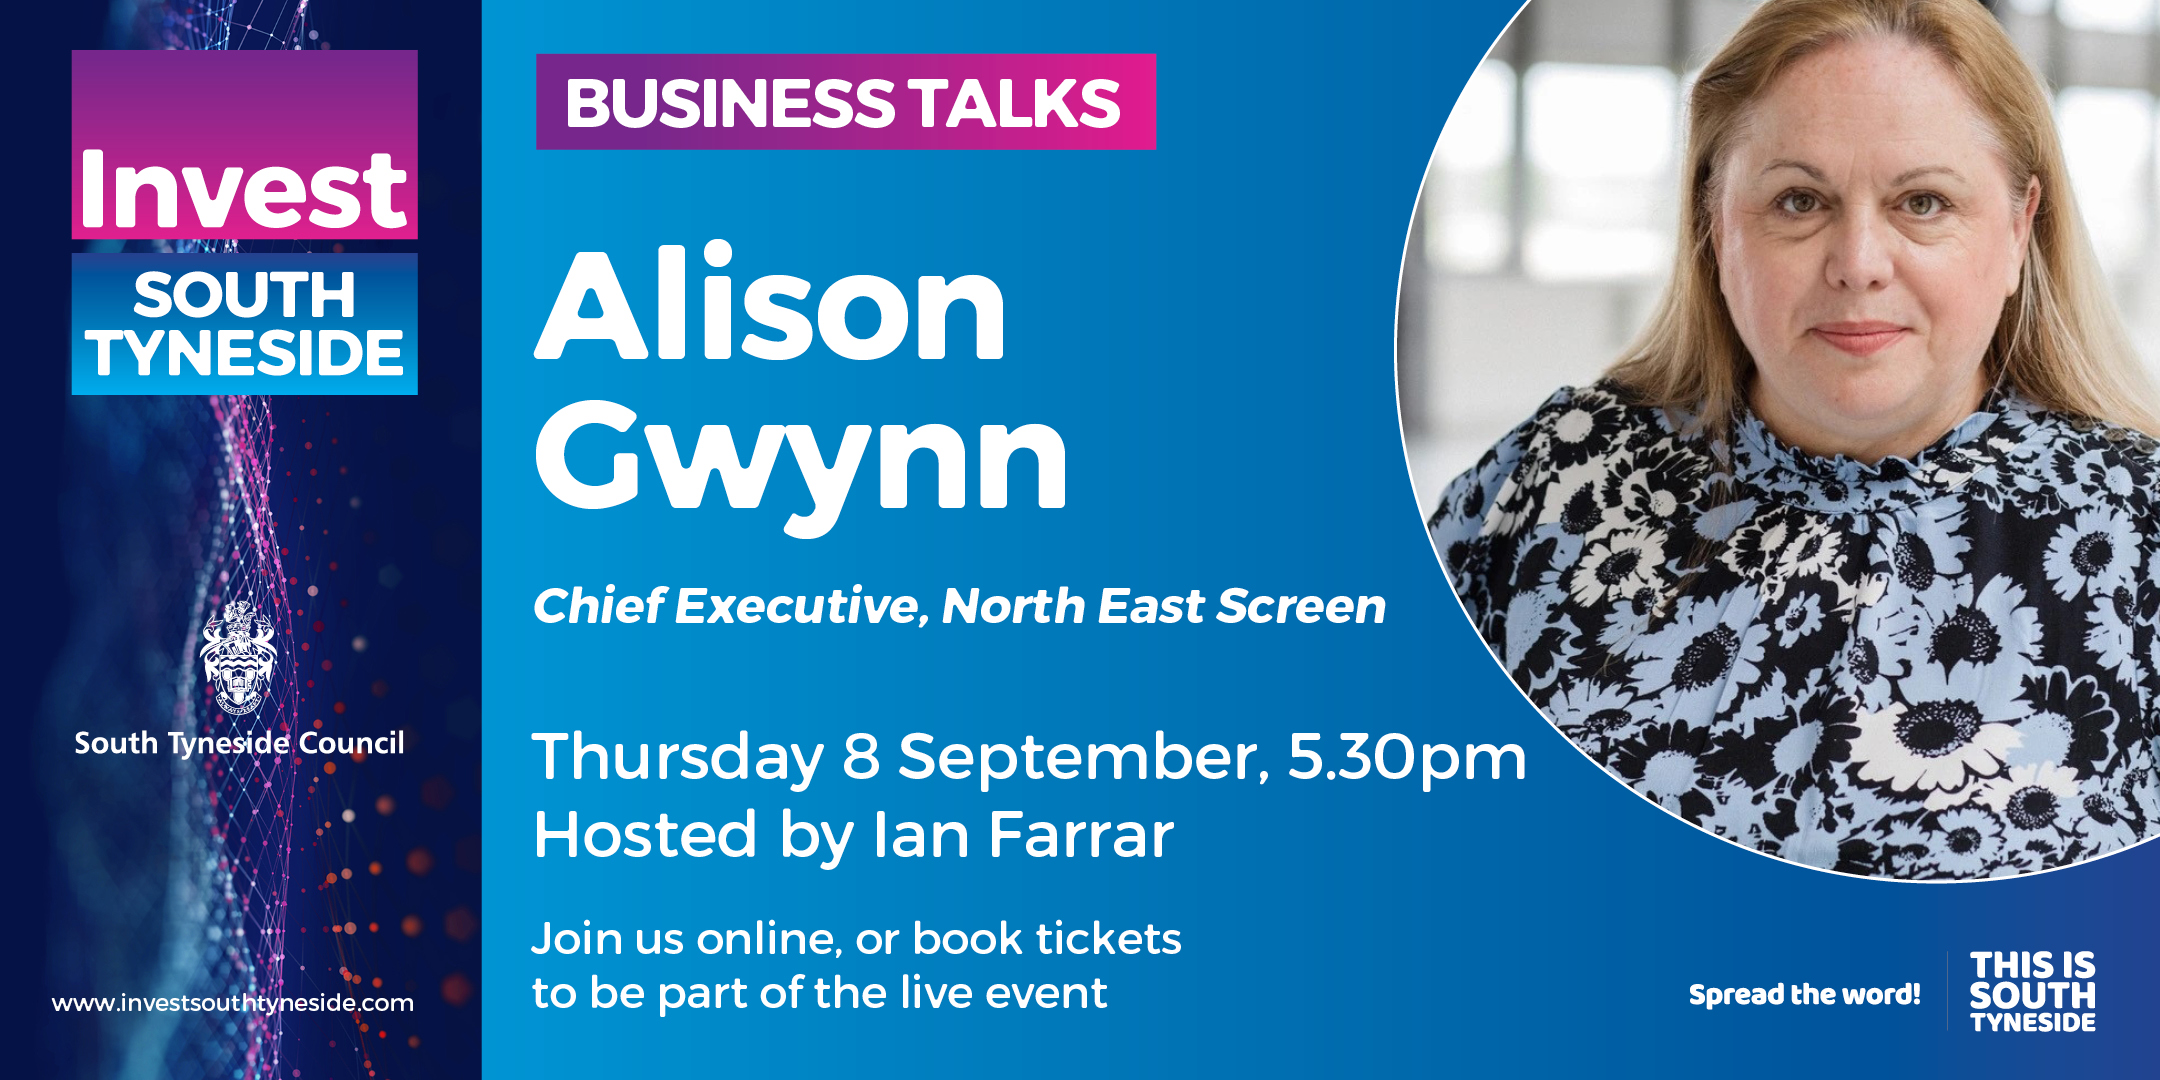 Business Talk: Alison Gwynn, North East Screen